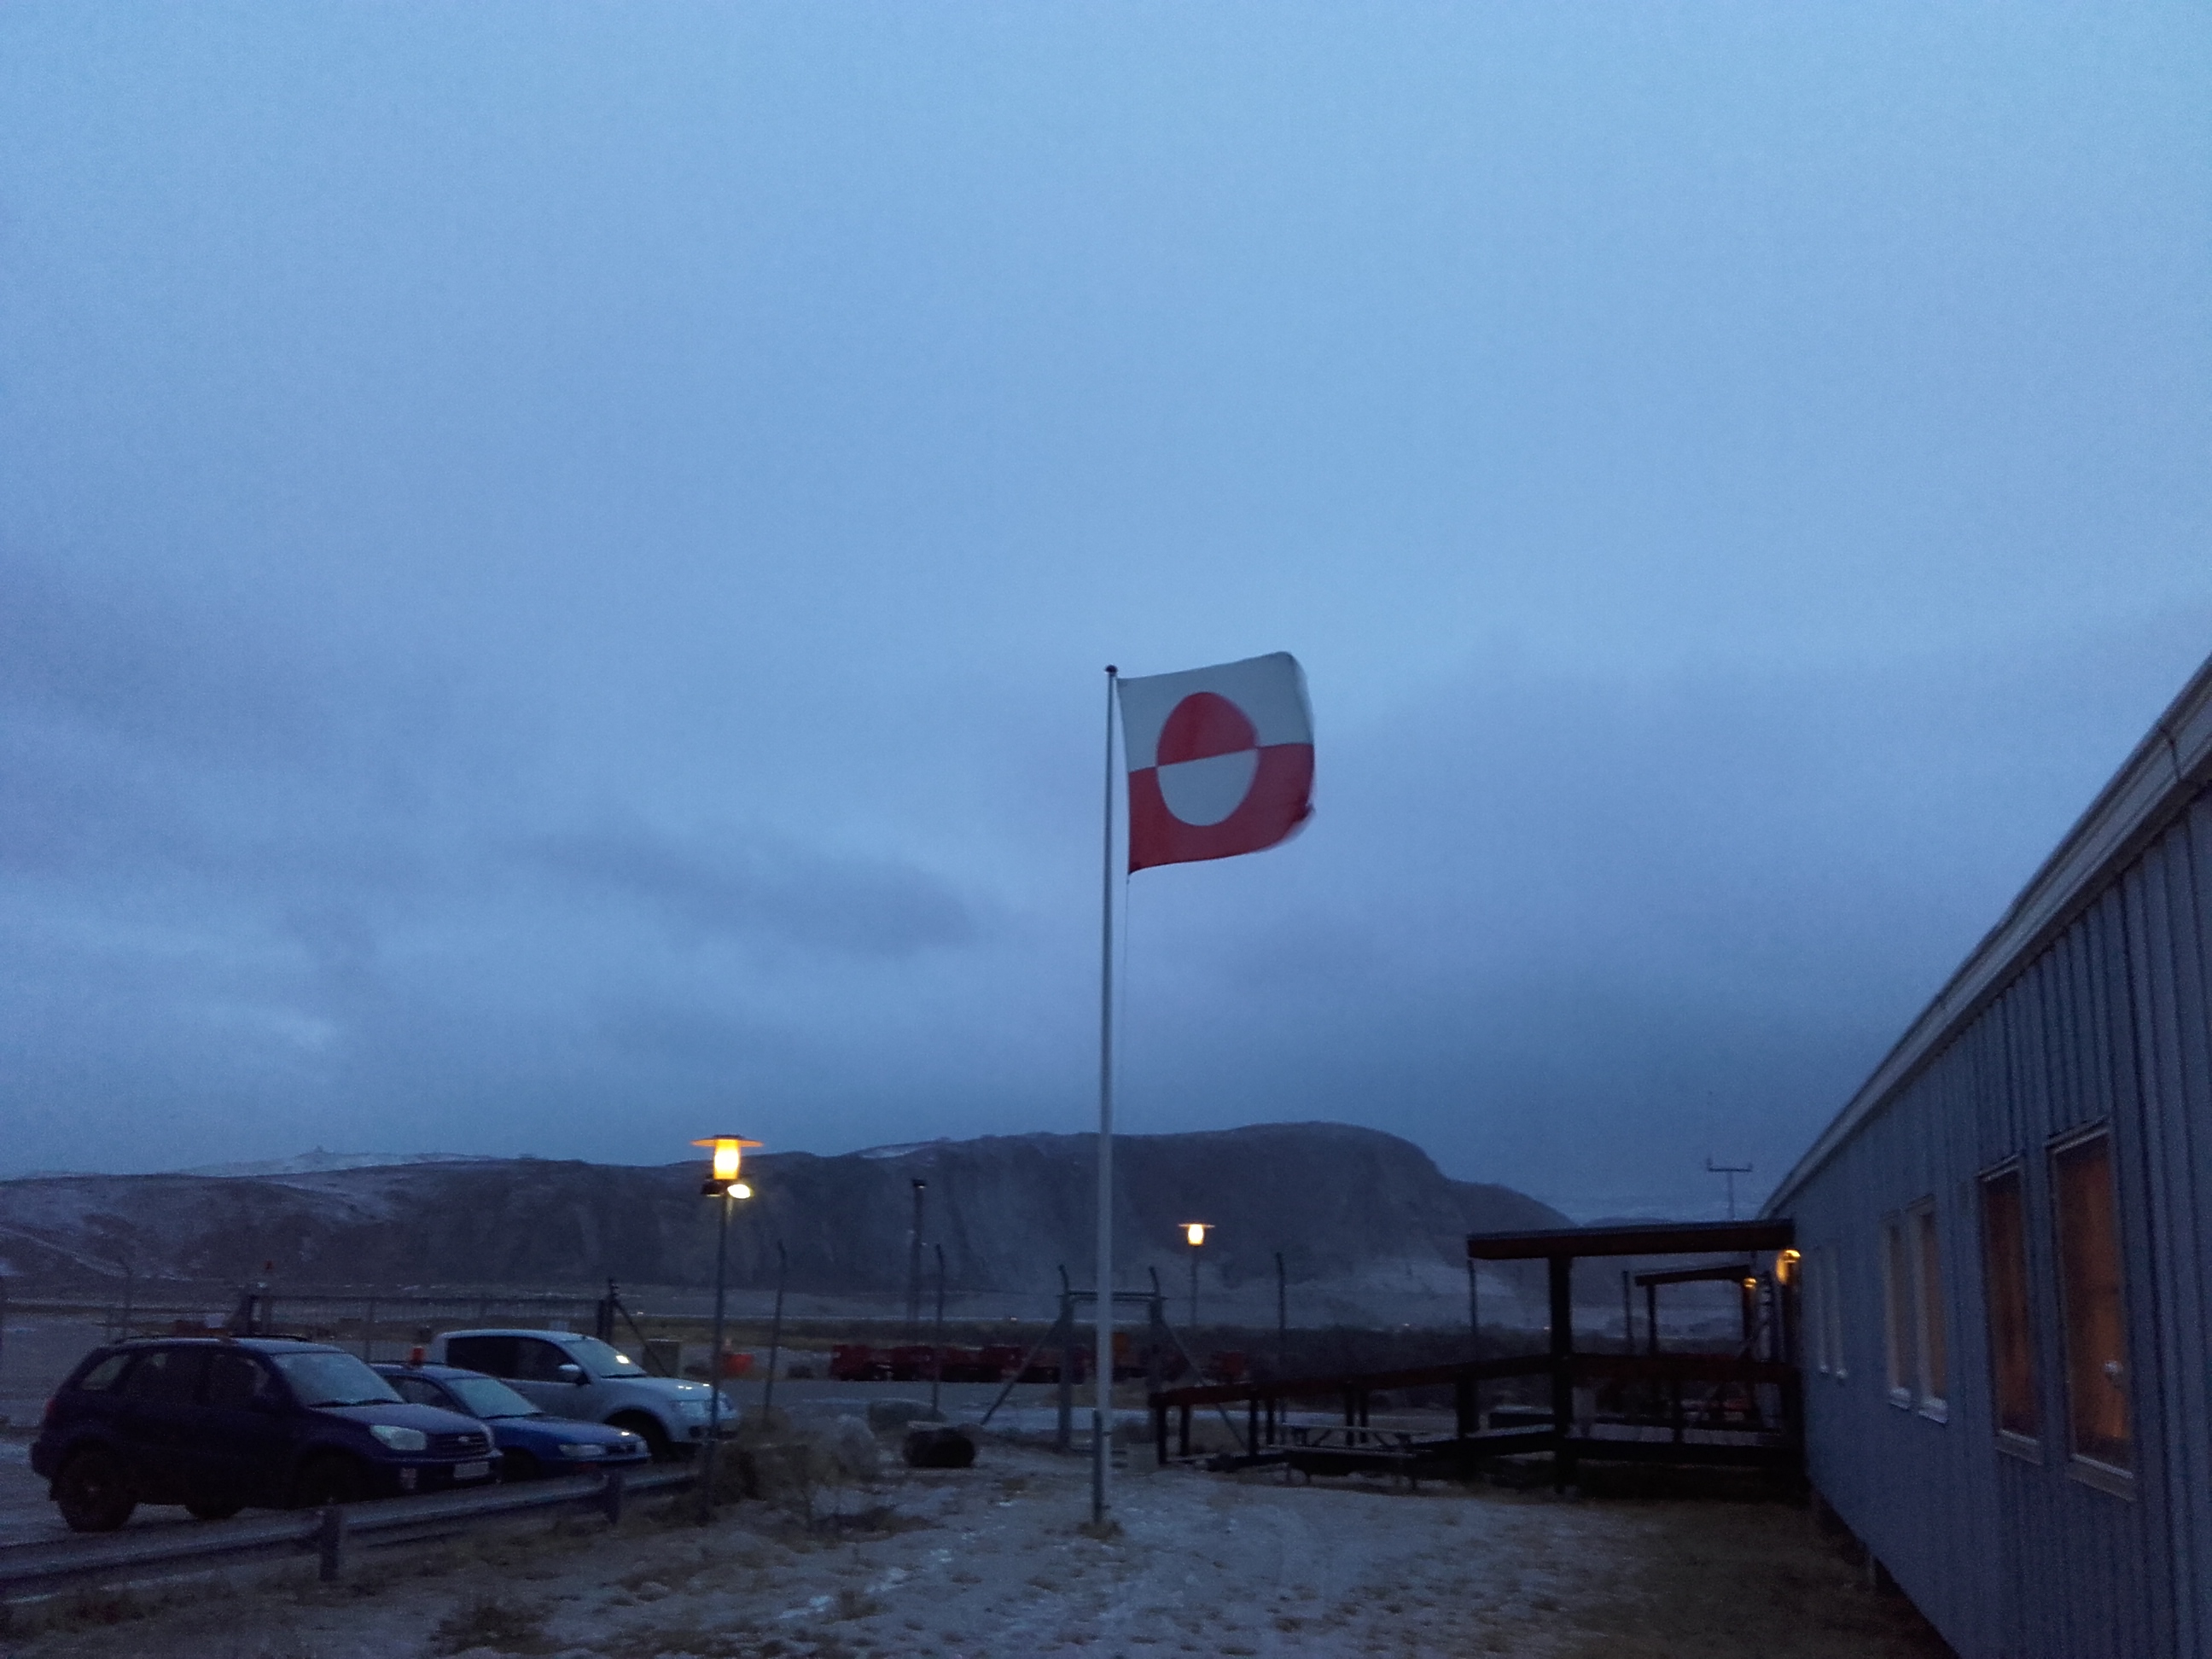 Det er sjældent det grønlandske flag får så meget vind i Kangerlussuaq